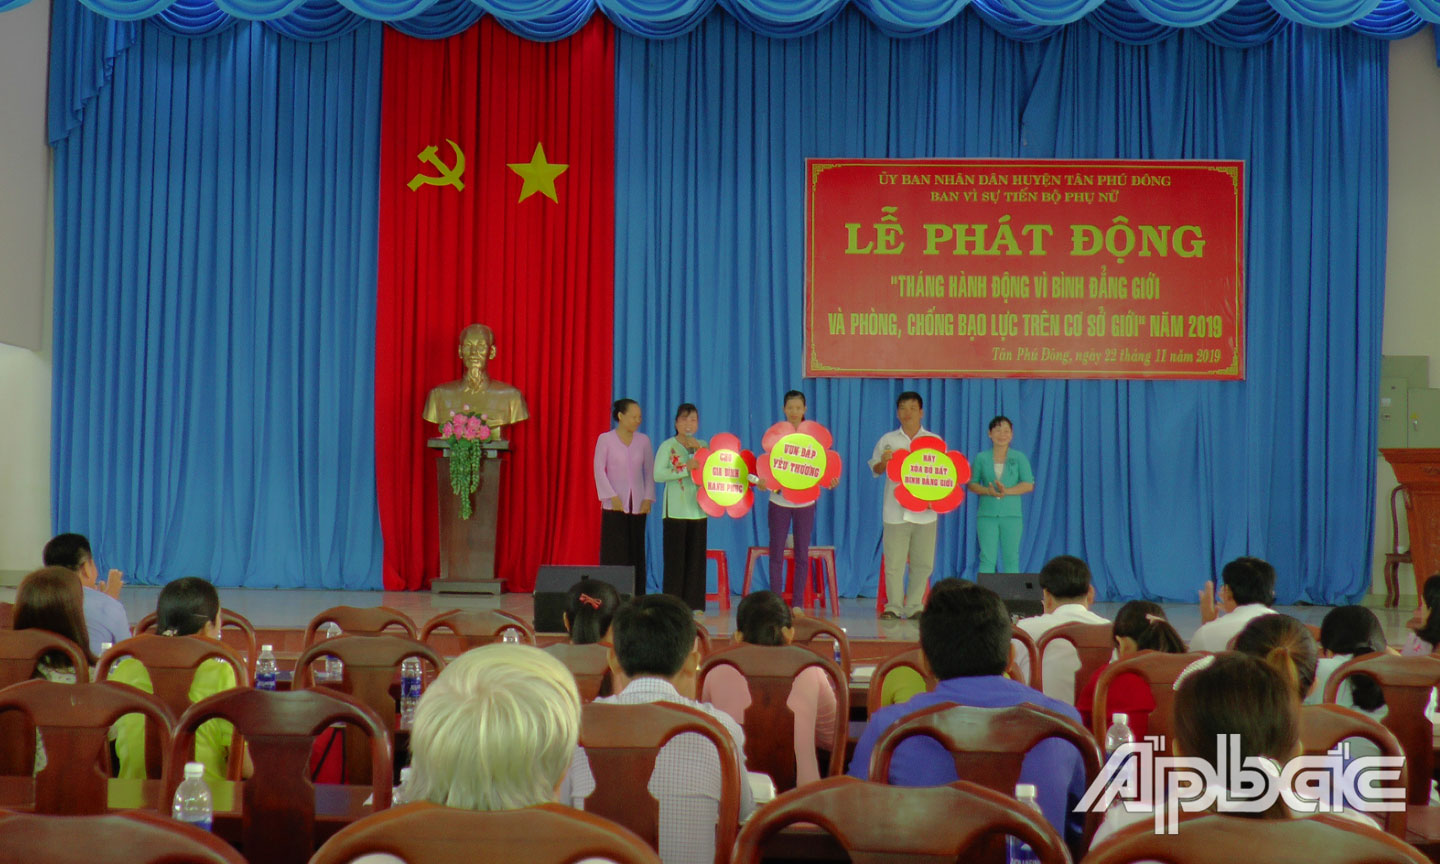 Phát động Tháng hành động vì BĐG và phòng, chống bạo lực trên  cơ sở giới năm 2019 tại huyện Tân Phú Đông. 